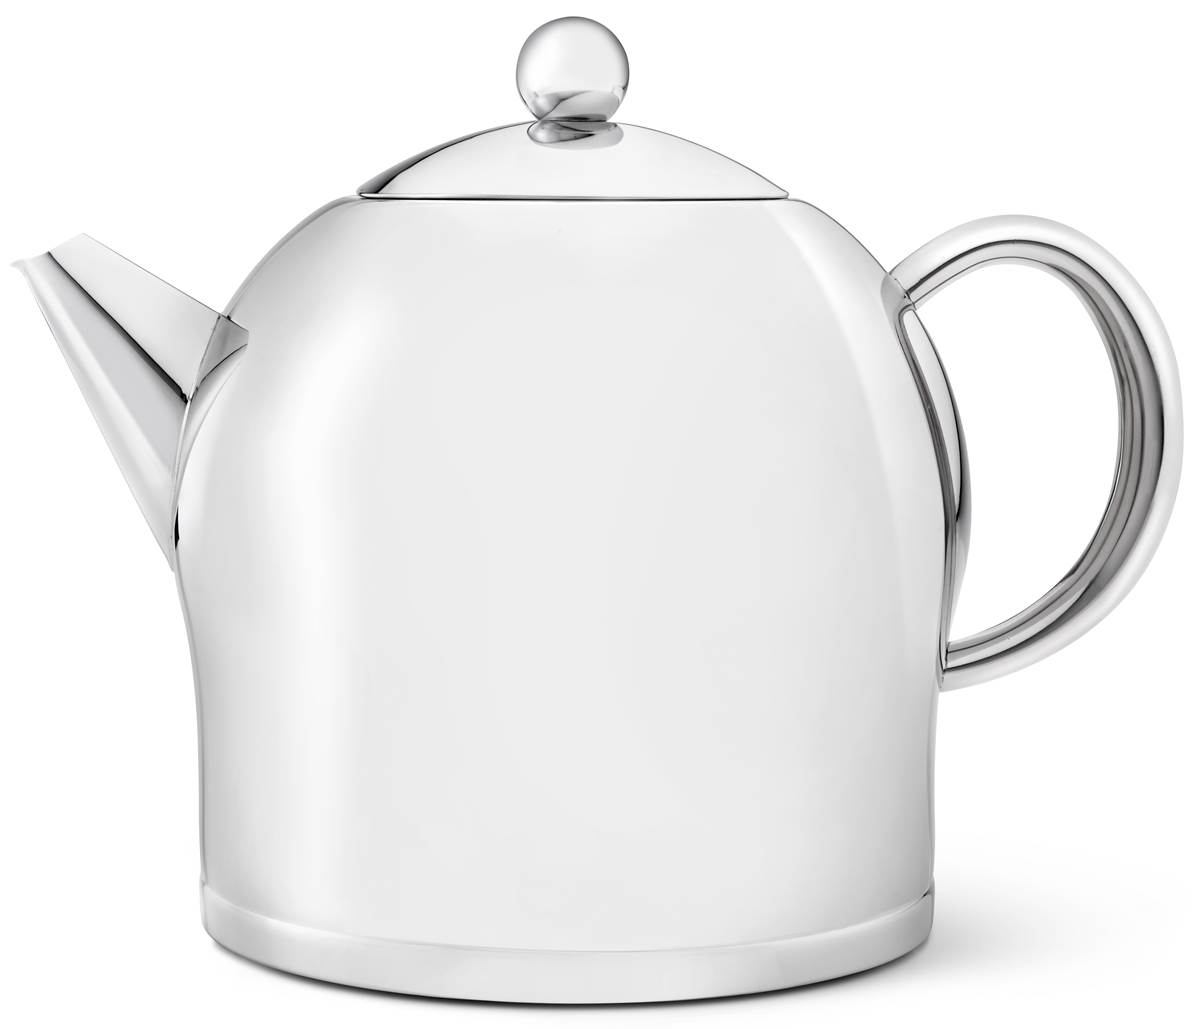 Bredemeijer große doppelwandige Edelstahl Teekanne 2.0 Liter | MM-ComSale